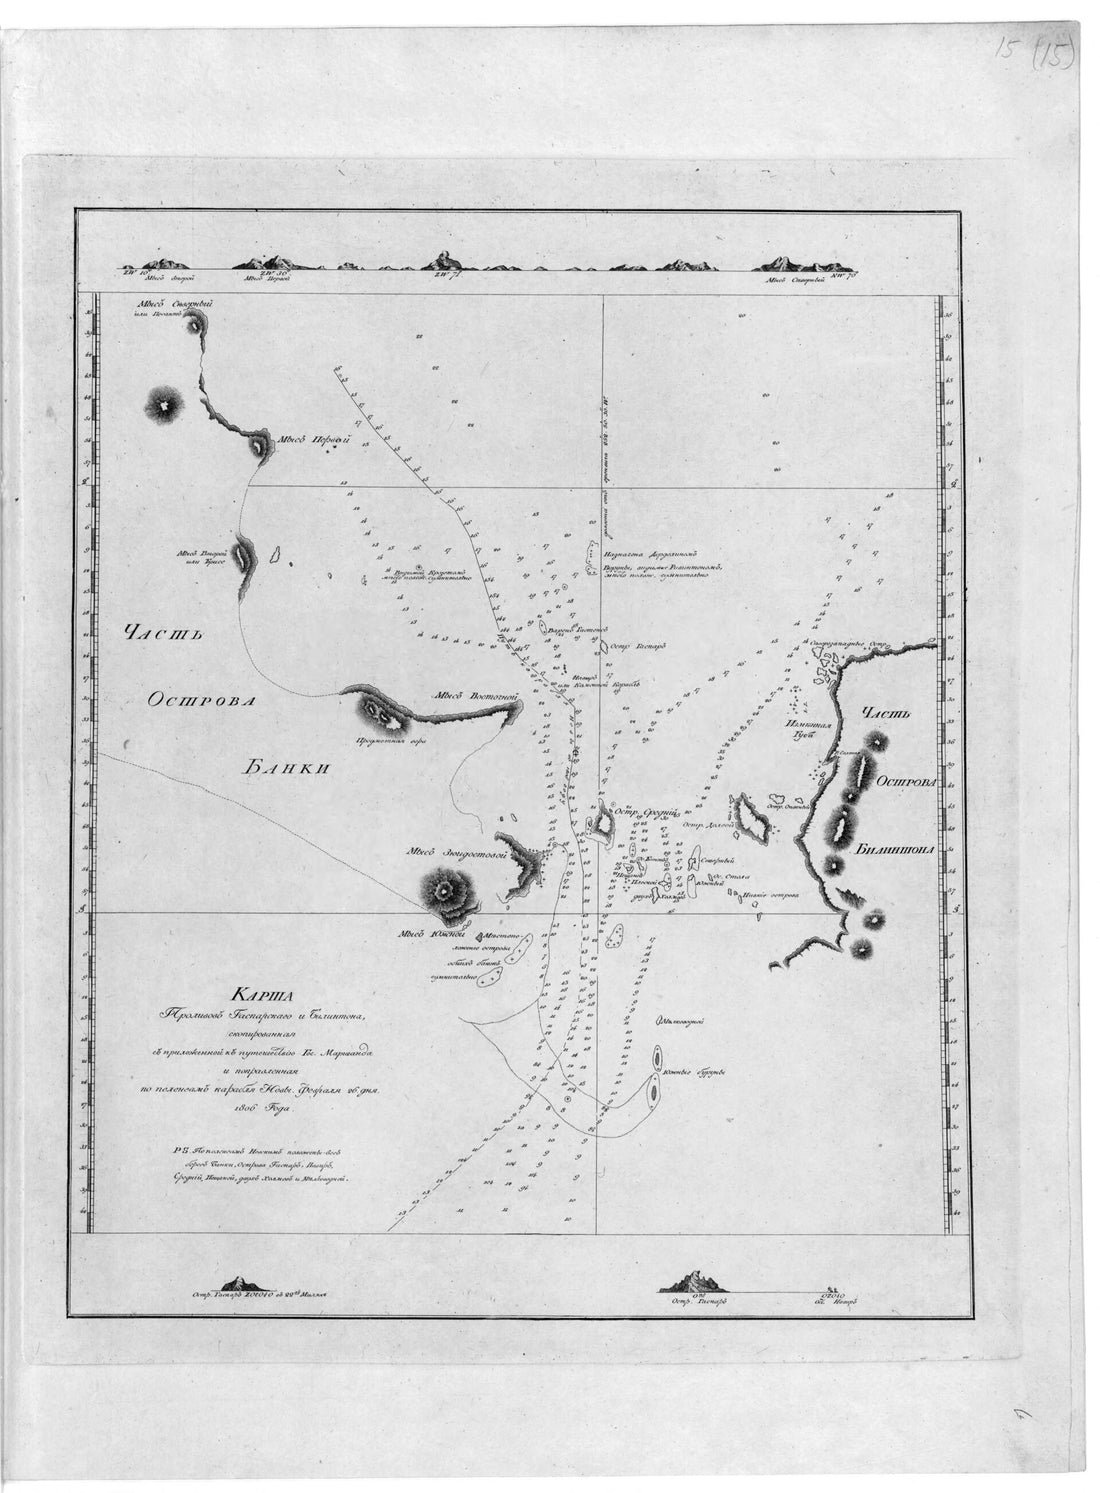 This old map of Karta Prolivov Gasparskogo I Bilintona, Skopirovannai︠a︡ S Prilozhennoĭ K Puteshestvii︠u︡ Gos. Marshanda I Popravlennai︠a︡ Po Pelengam Korabli︠a︡ Nevy. Fevrali︠a︡ 26 Dni︠a︡ 1806 Goda. (Карта проливов Гас was created by I︠u︡ri Lisi︠a︡nskiĭ in 1812